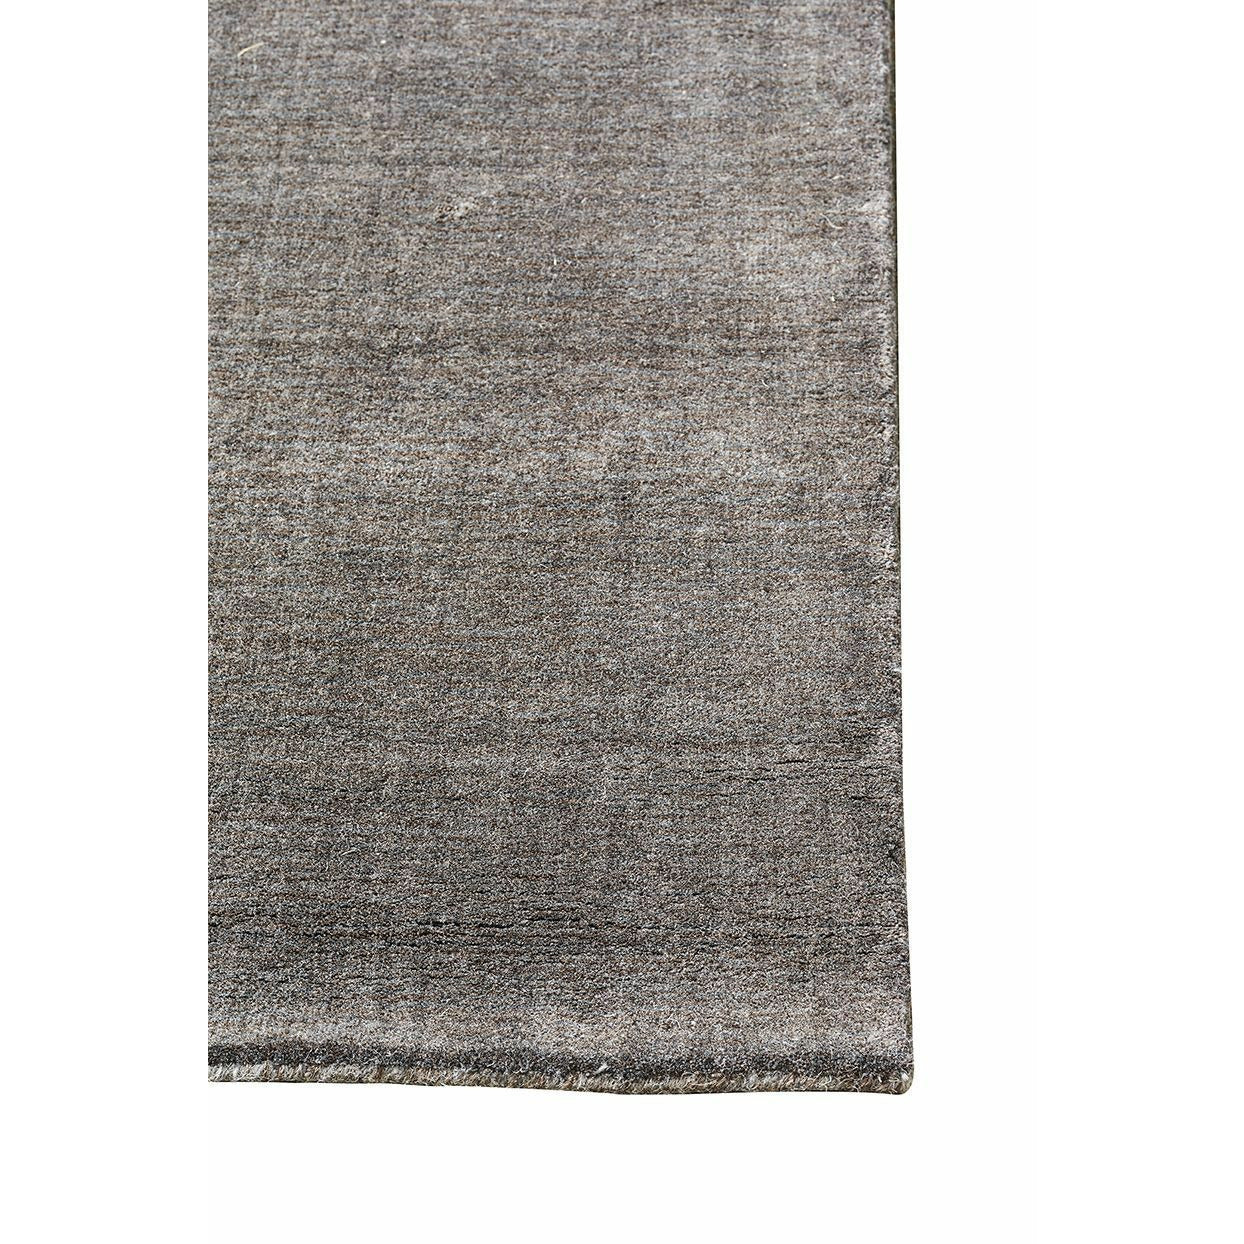 Massimo Earth Bambus Teppich warmes Grau, 300 x 400 cm